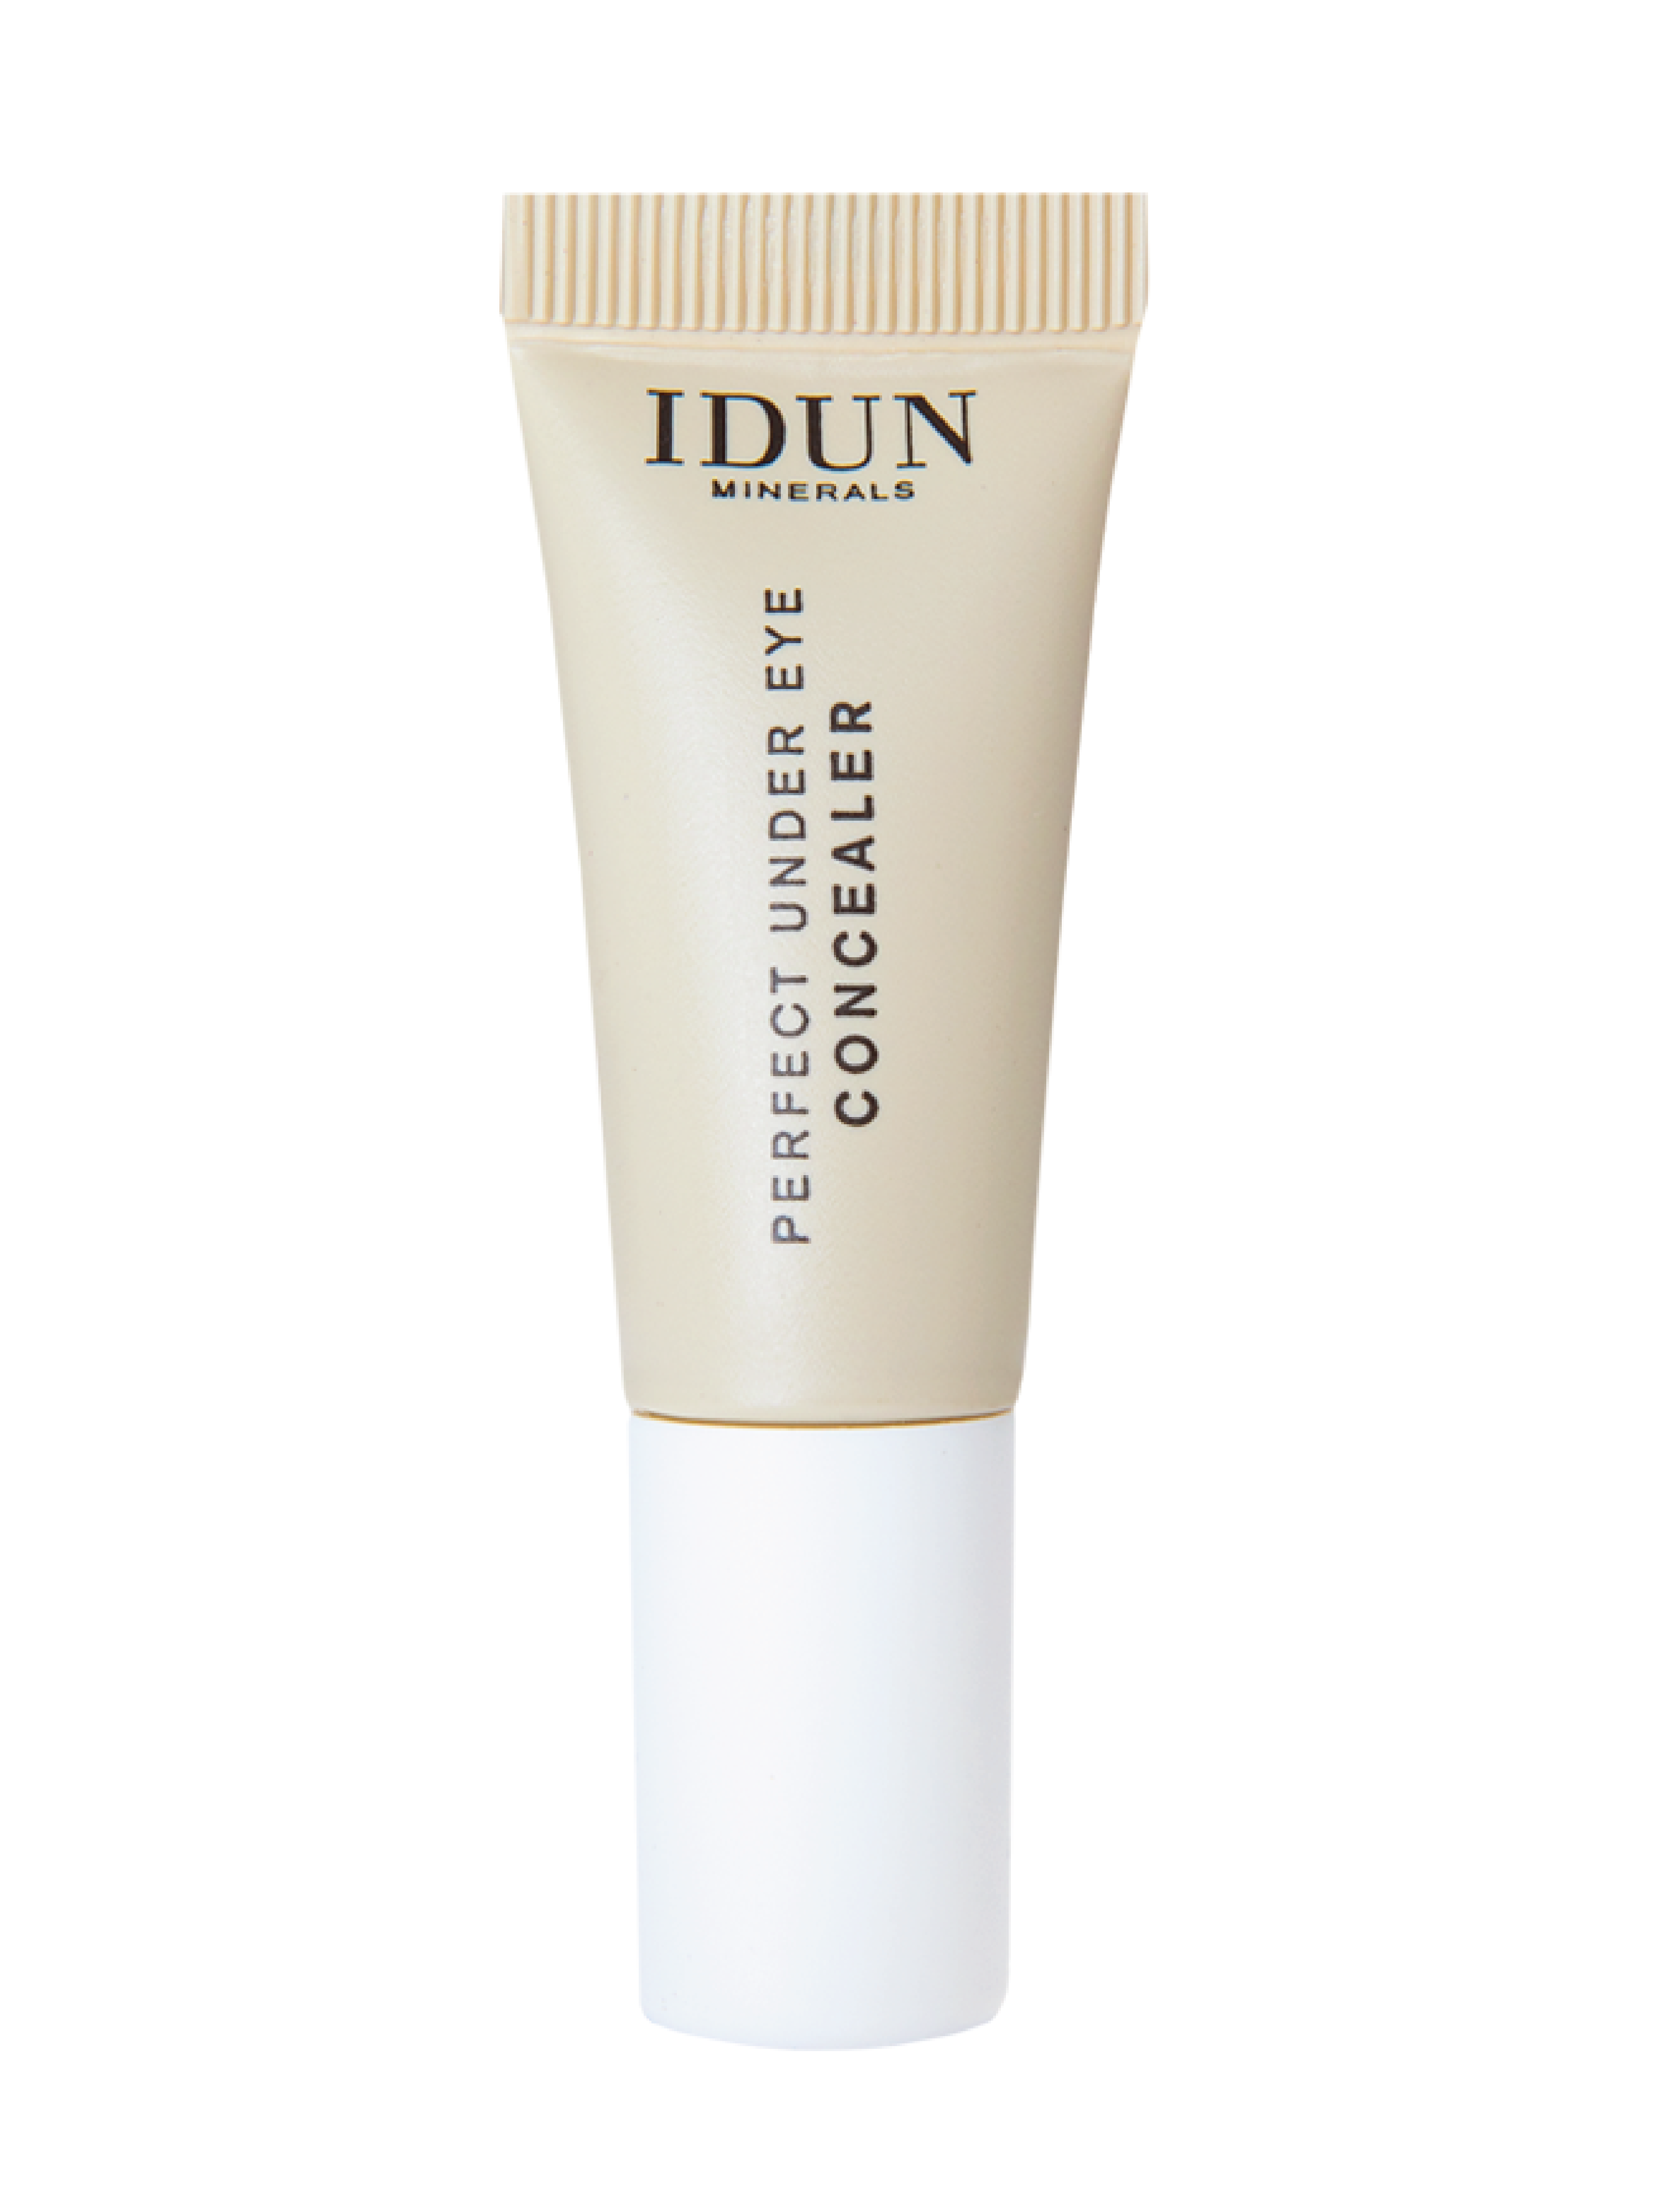 IDUN Minerals Perfect Under Eye Concealer, Medium, 6 ml